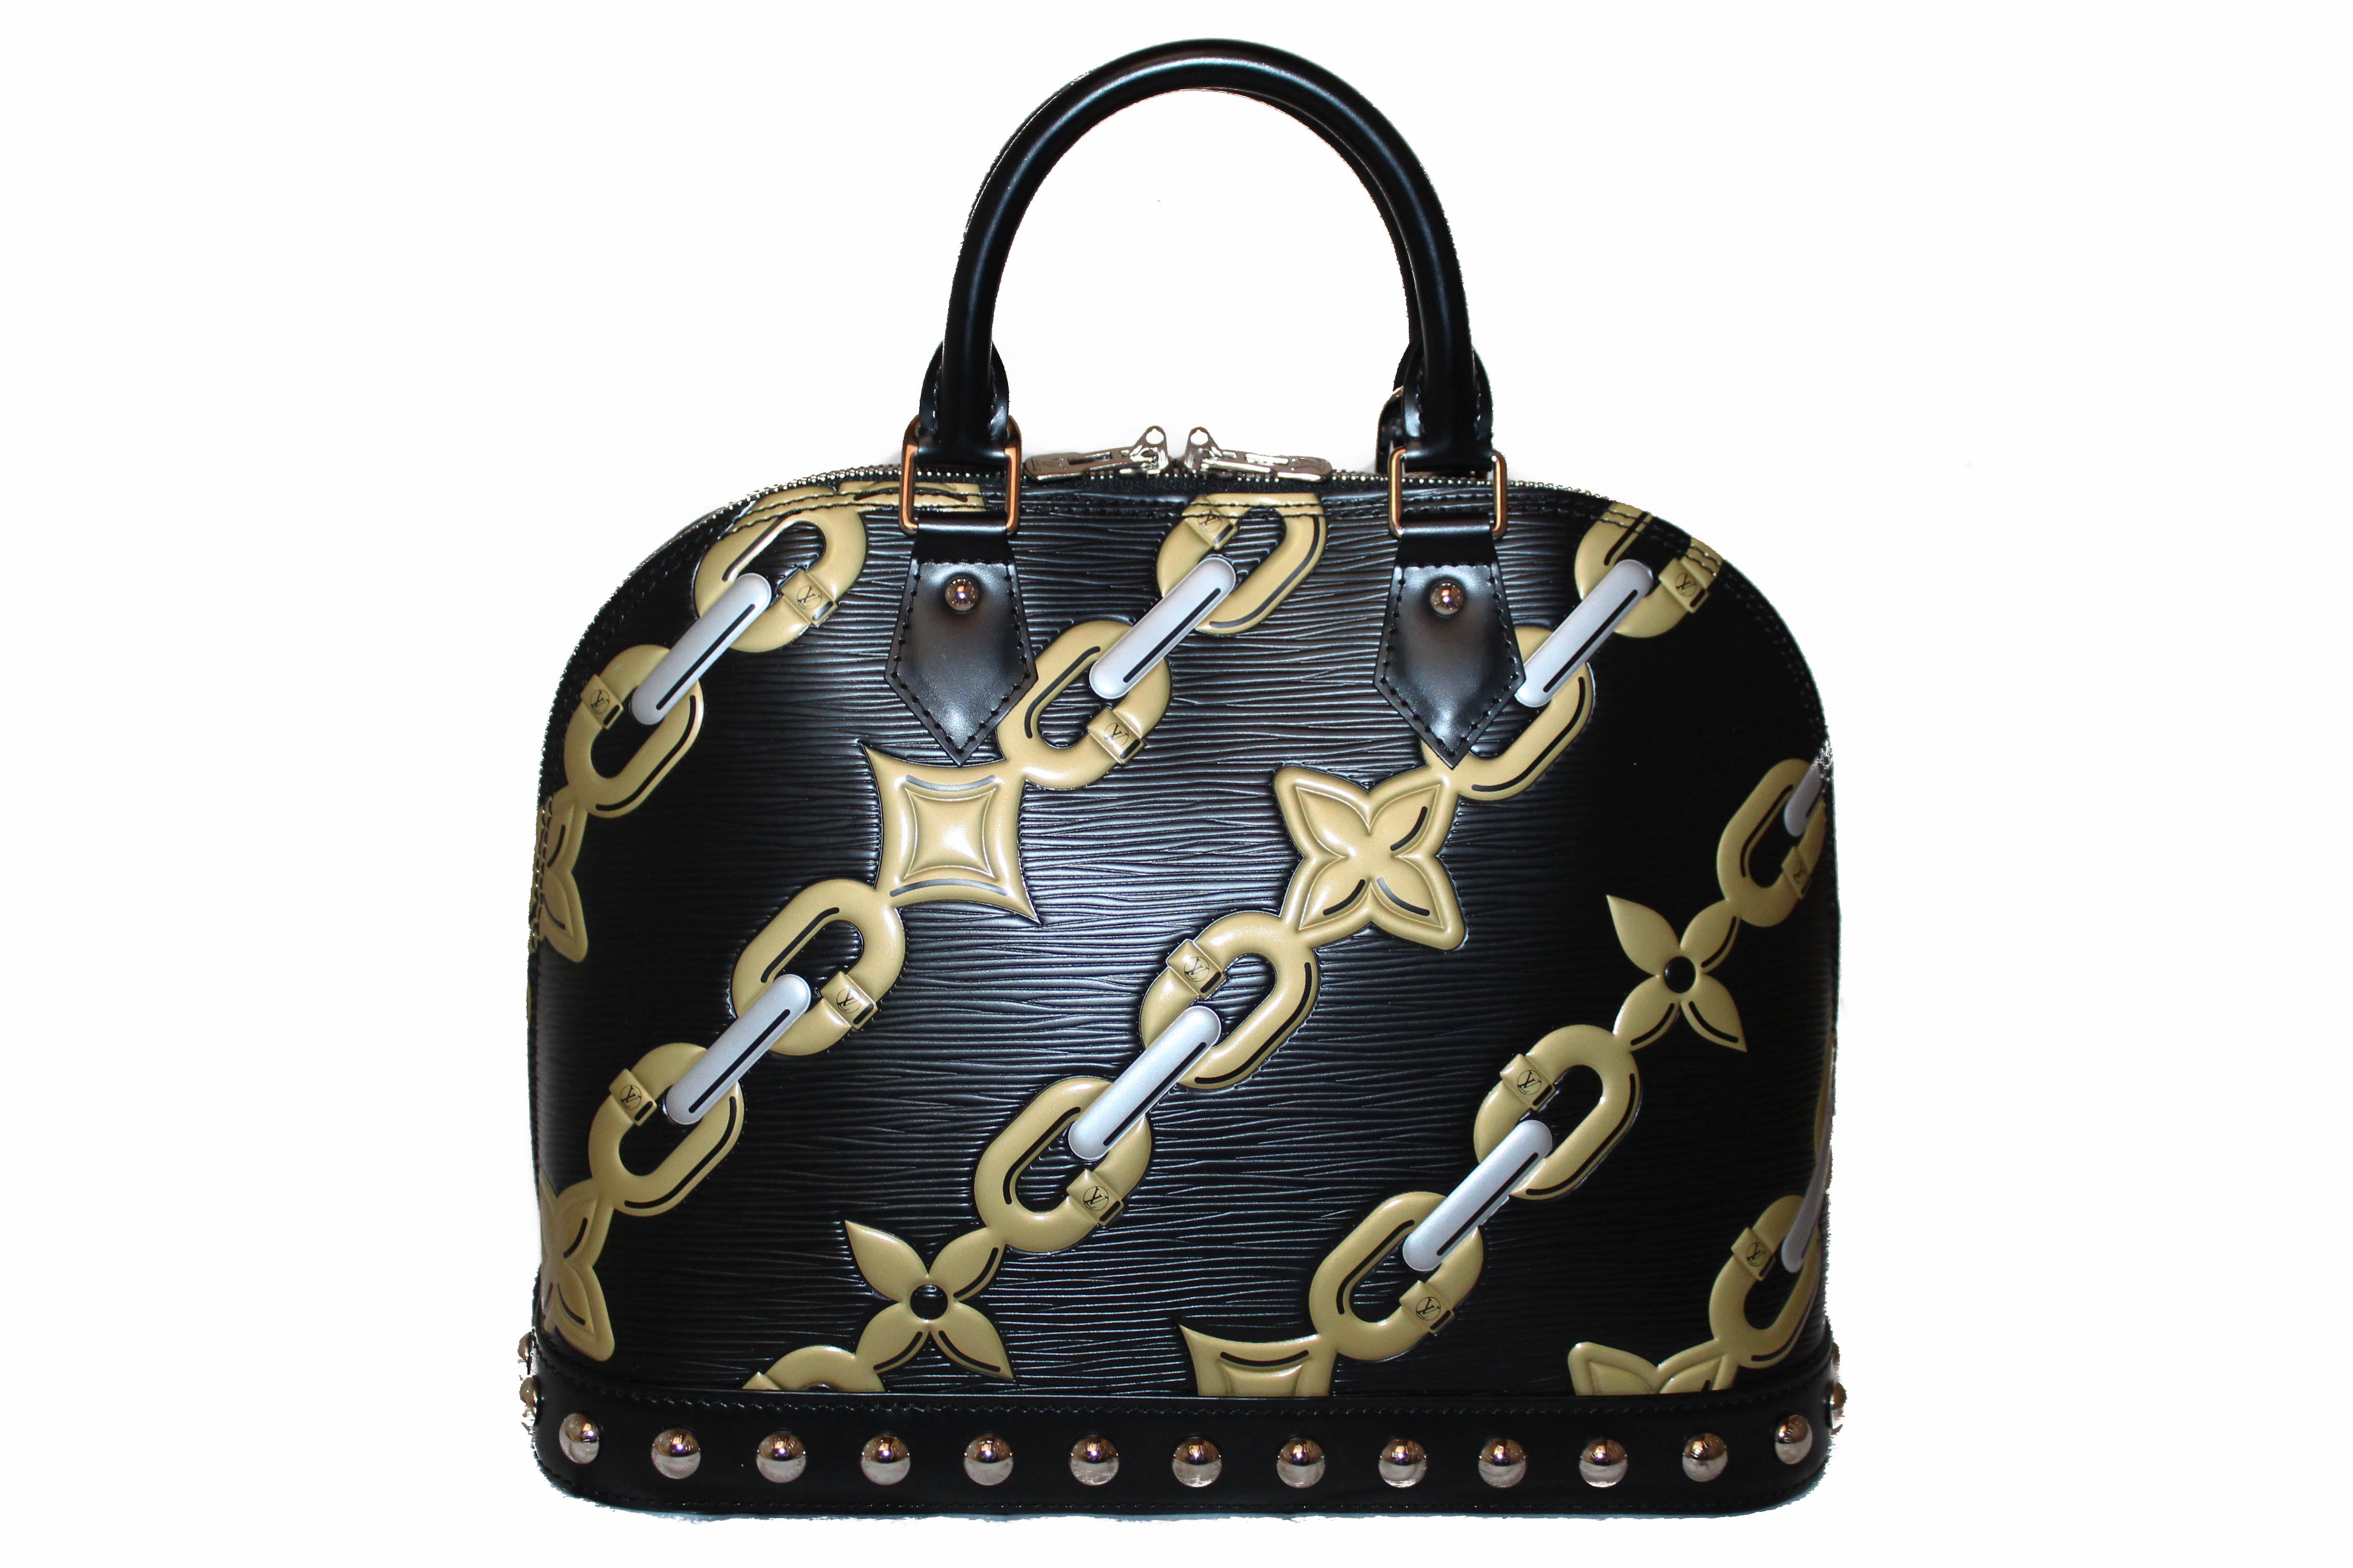 Authentic Louis Vuitton Black Epi Leather Alma PM Hand Bag – Paris